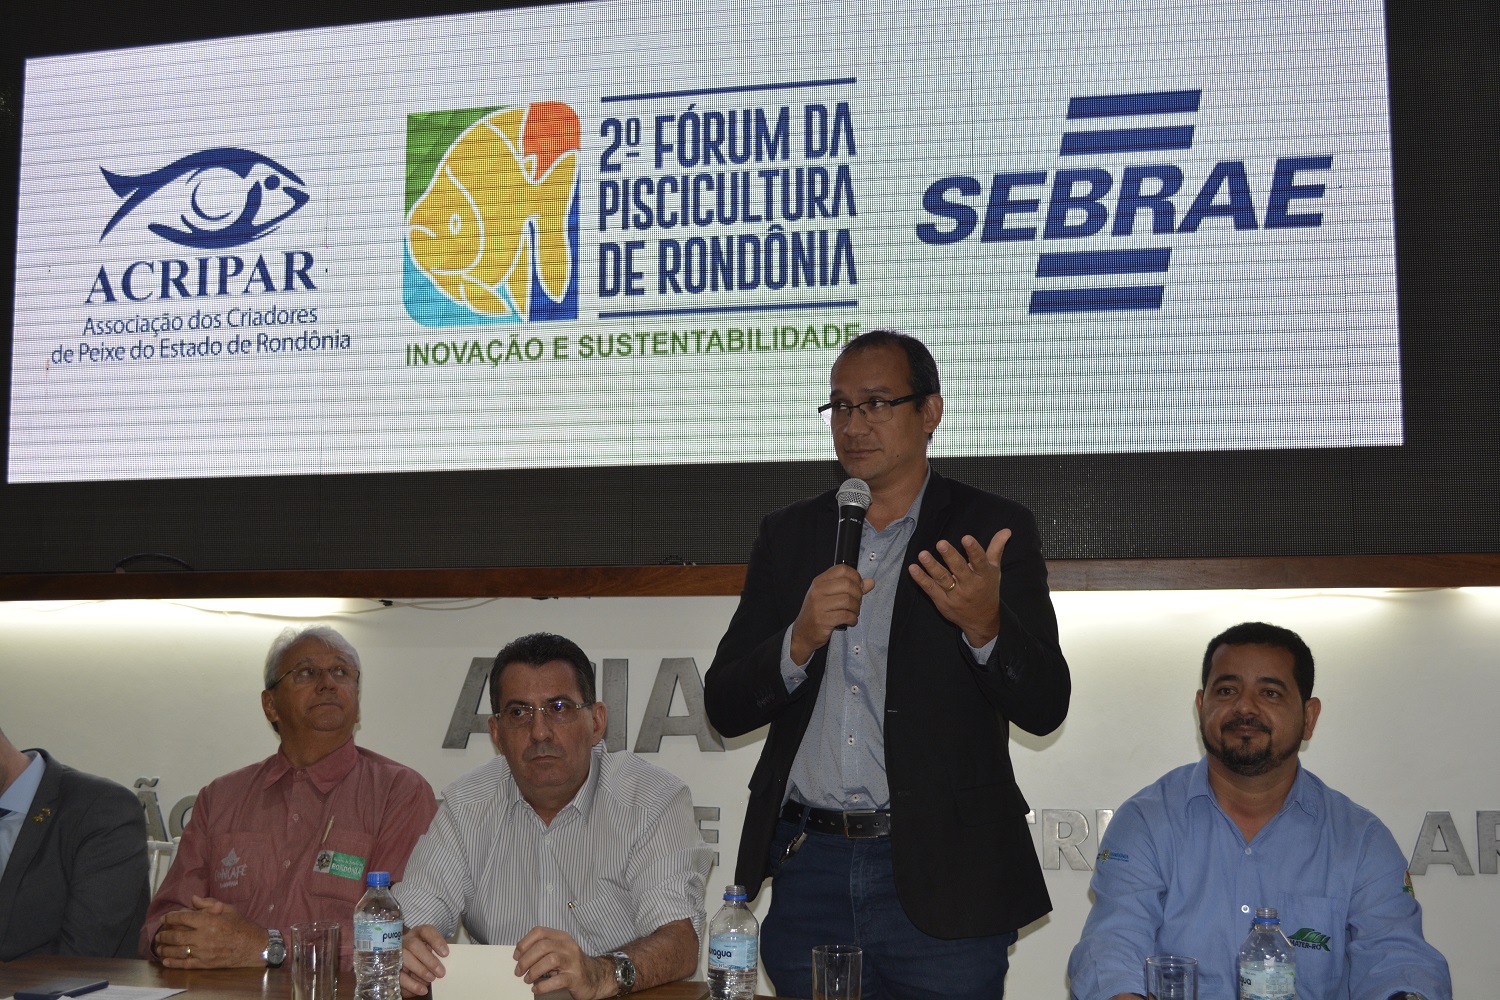 2º FÓRUM DA PISCICULTURA DISCUTE SUSTENTABILIDADE E INOVAÇÃO - News Rondônia